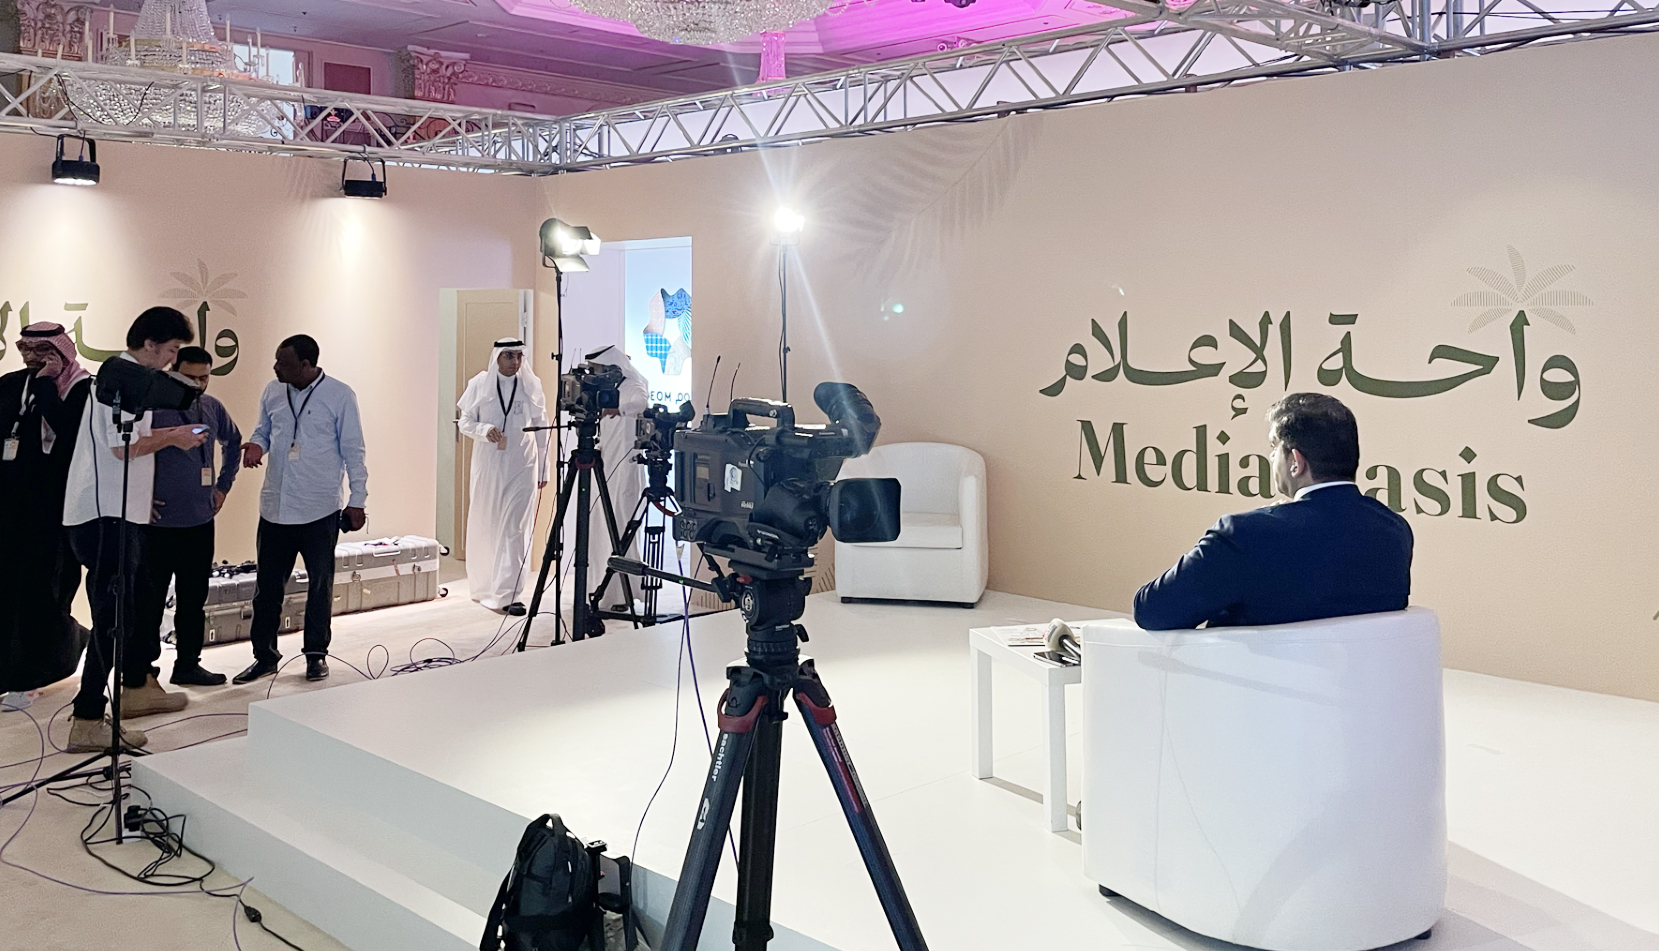 A Media Oasis studio set up for Jeddah Summit